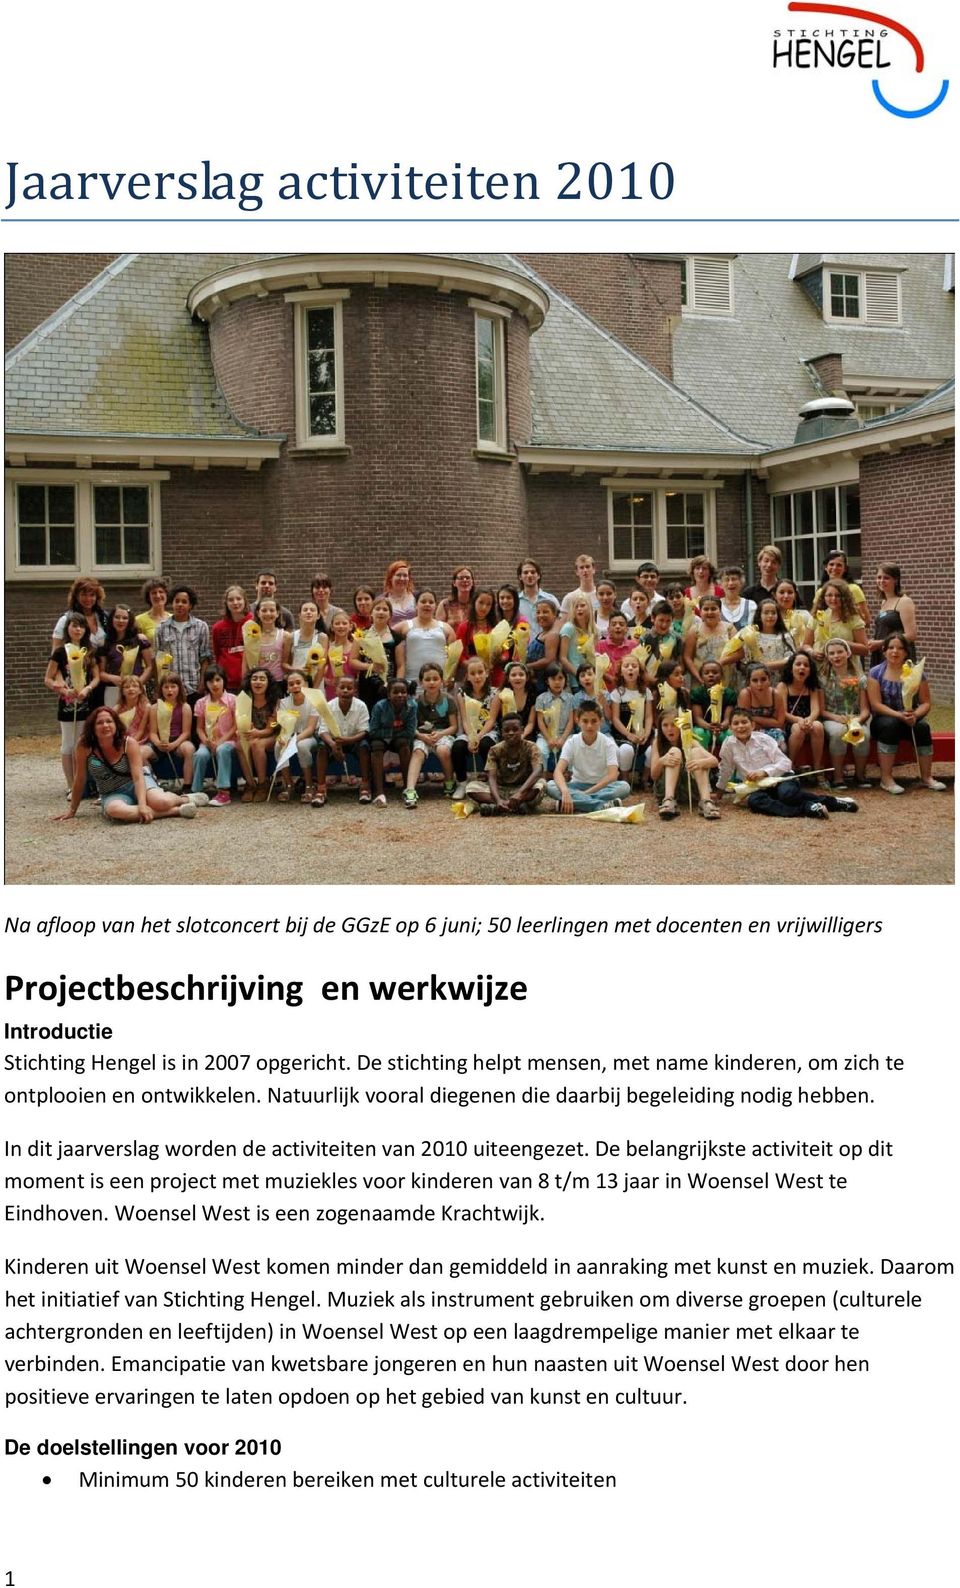 In dit jaarverslag worden de activiteiten van 2010 uiteengezet. De belangrijkste activiteit op dit moment is een project met muziekles voor kinderen van 8 t/m 13 jaar in Woensel West te Eindhoven.